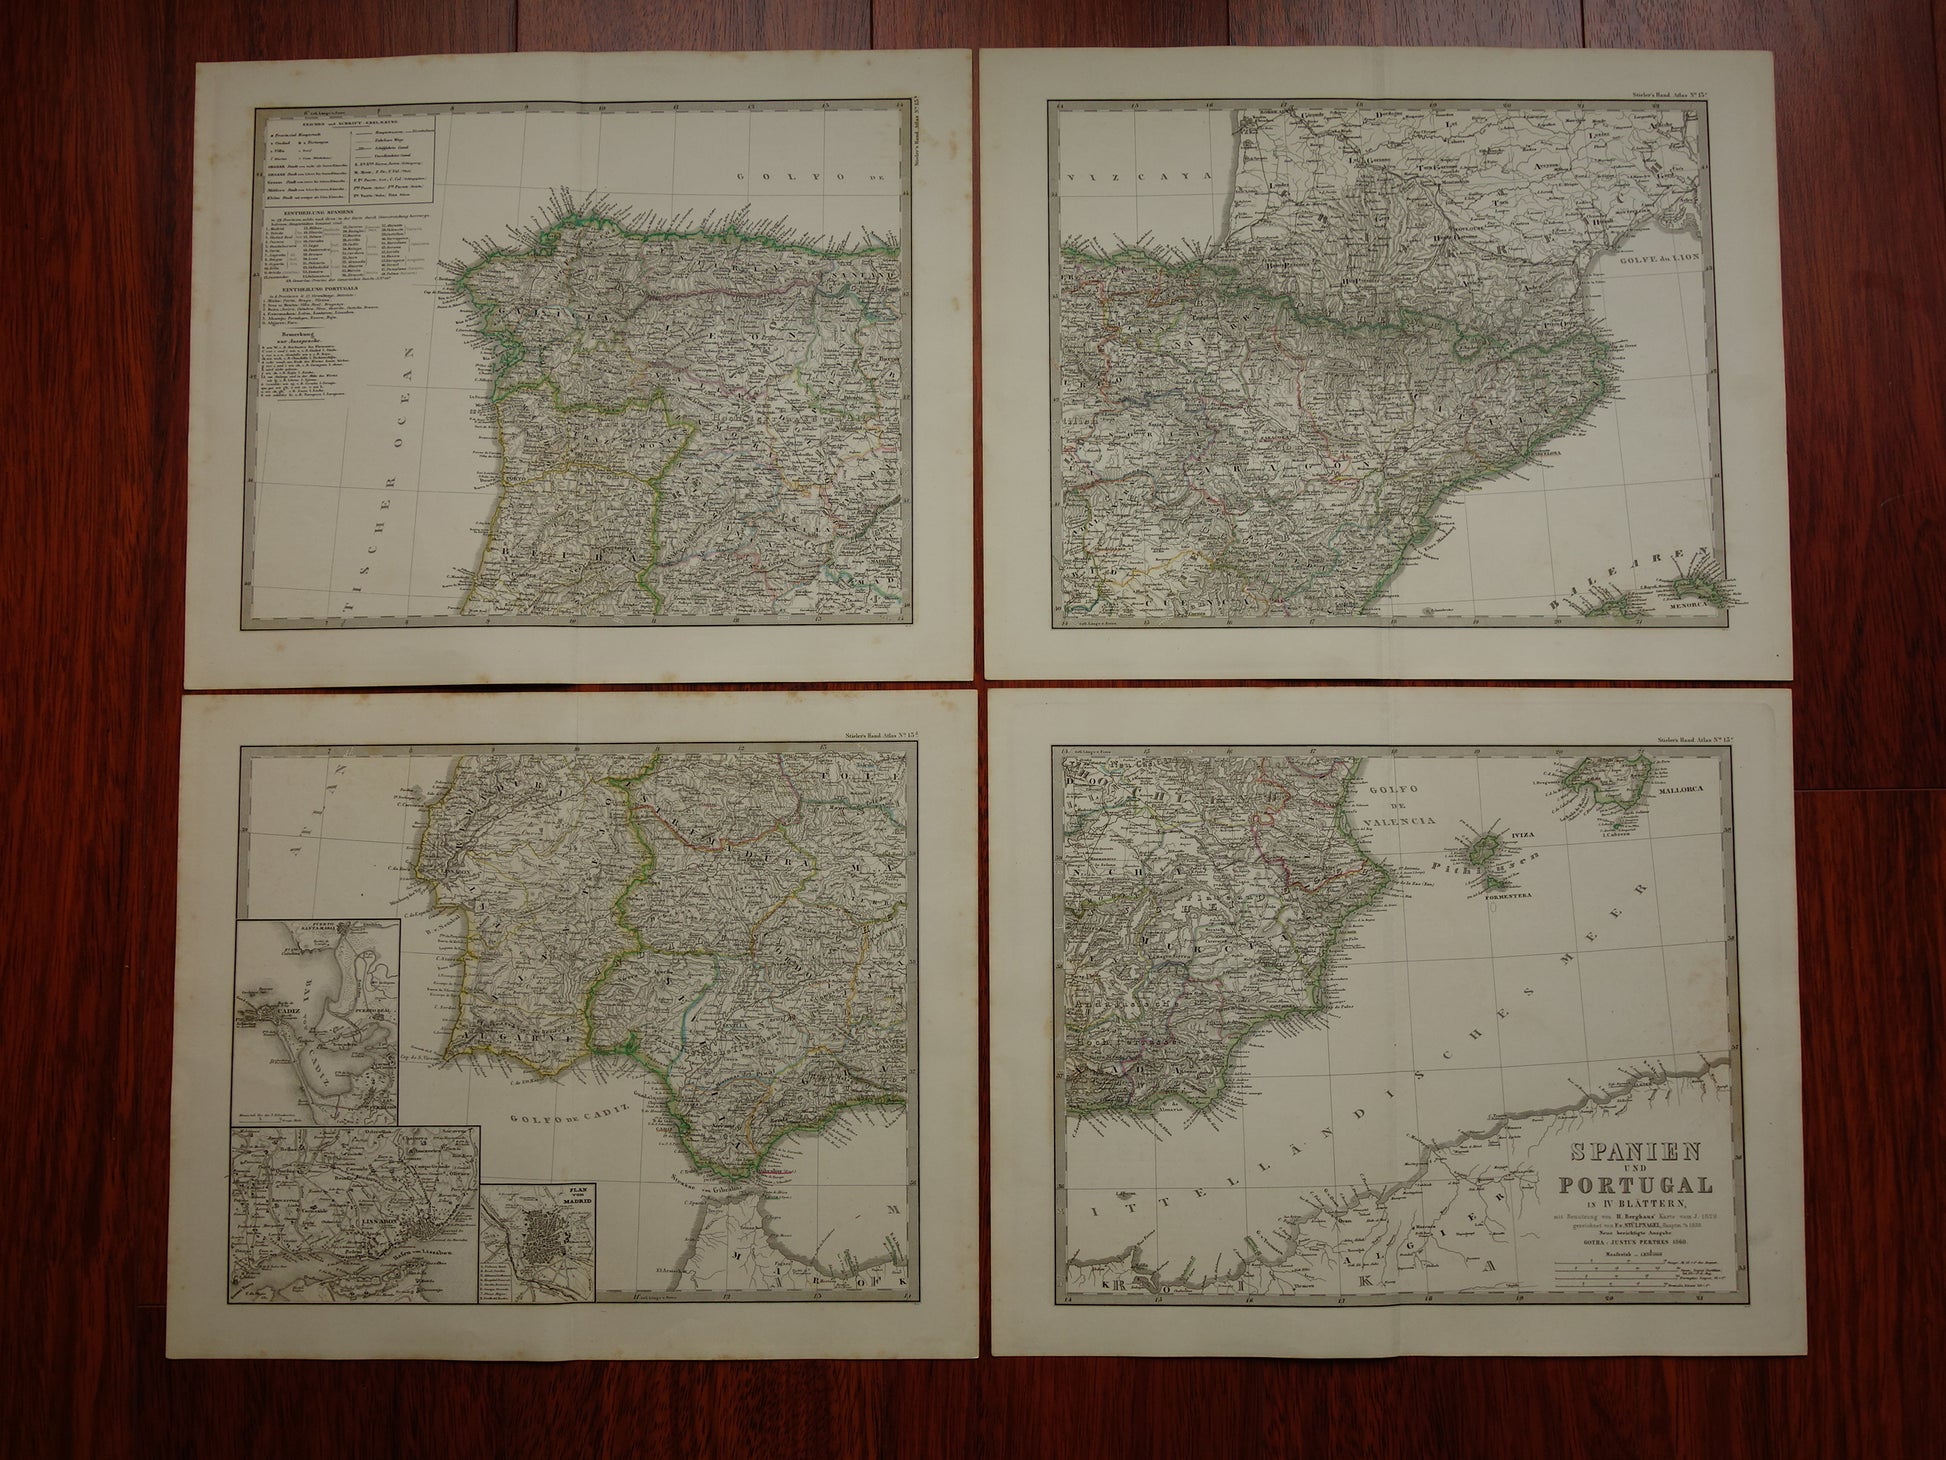 SPANJE Grote oude kaart van Spanje en Portugal 1860 originele antieke landkaart poster 73x89 cm met jaartal